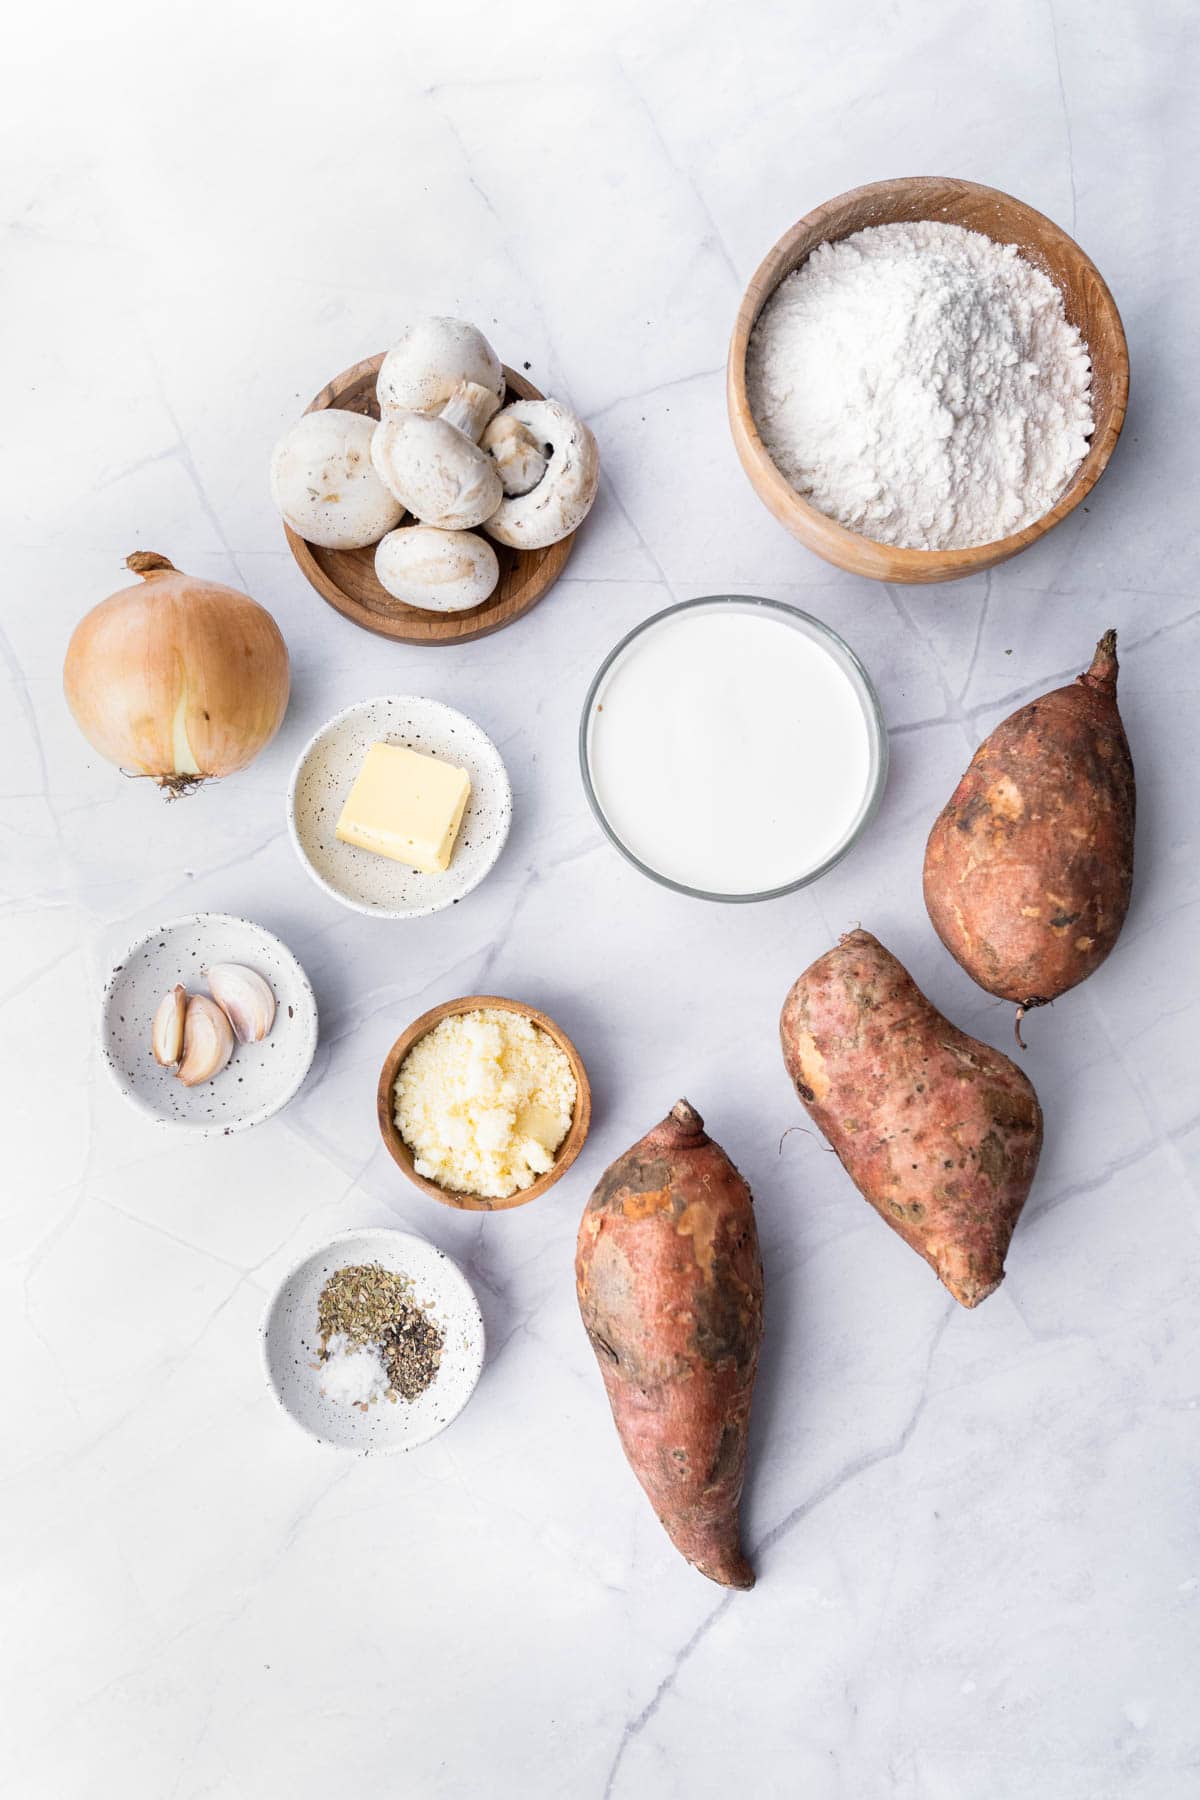 Ingredients for making sweet potato gnocchi.